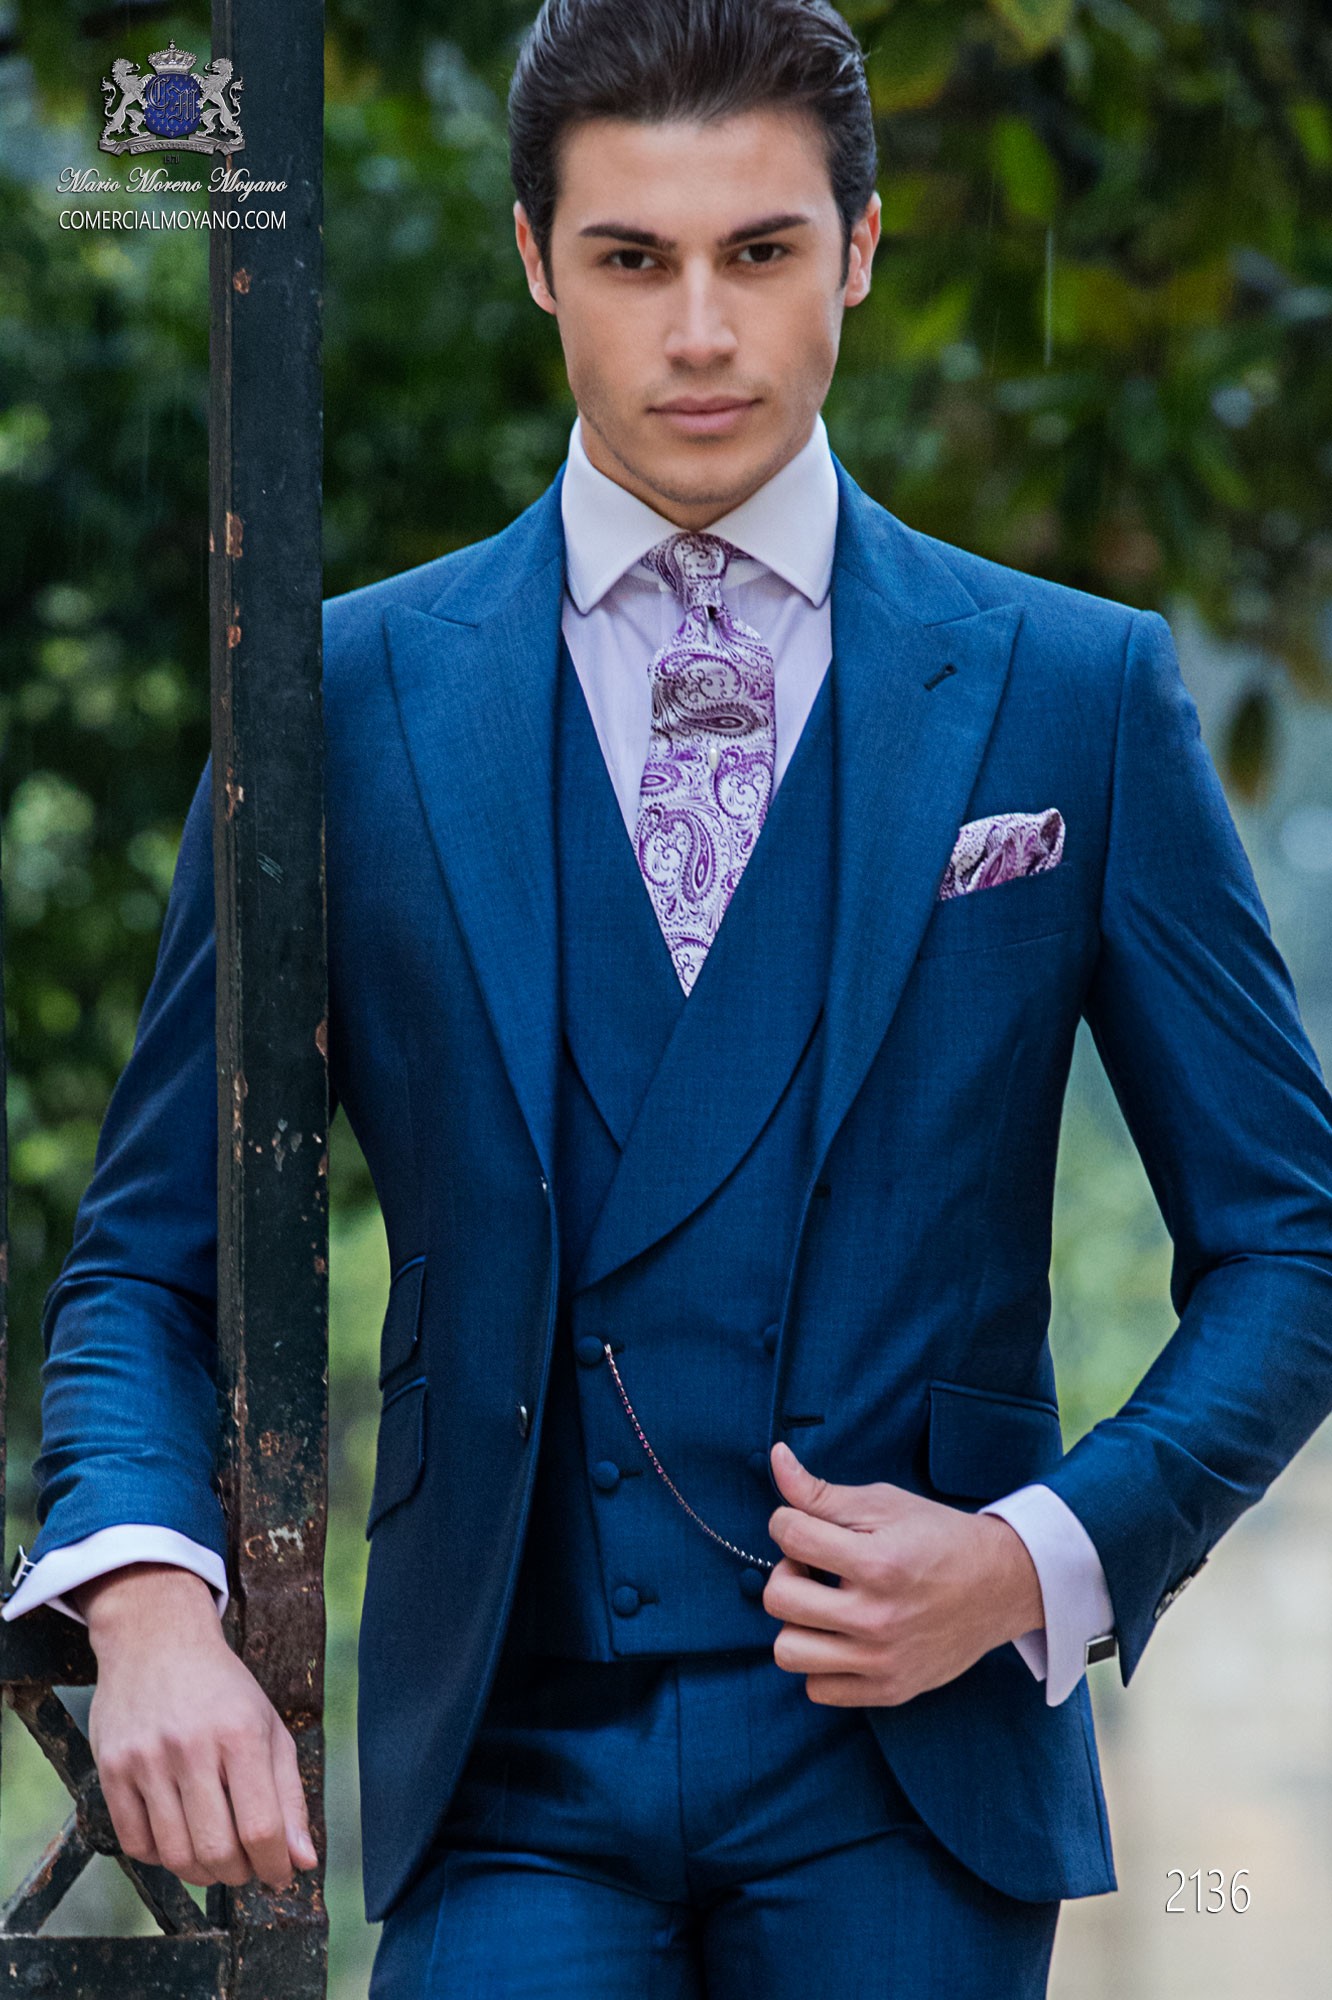 Traje de novio azul royal mixto lana mohair alpaca modelo: 2136 Mario Moyano colección Gentleman